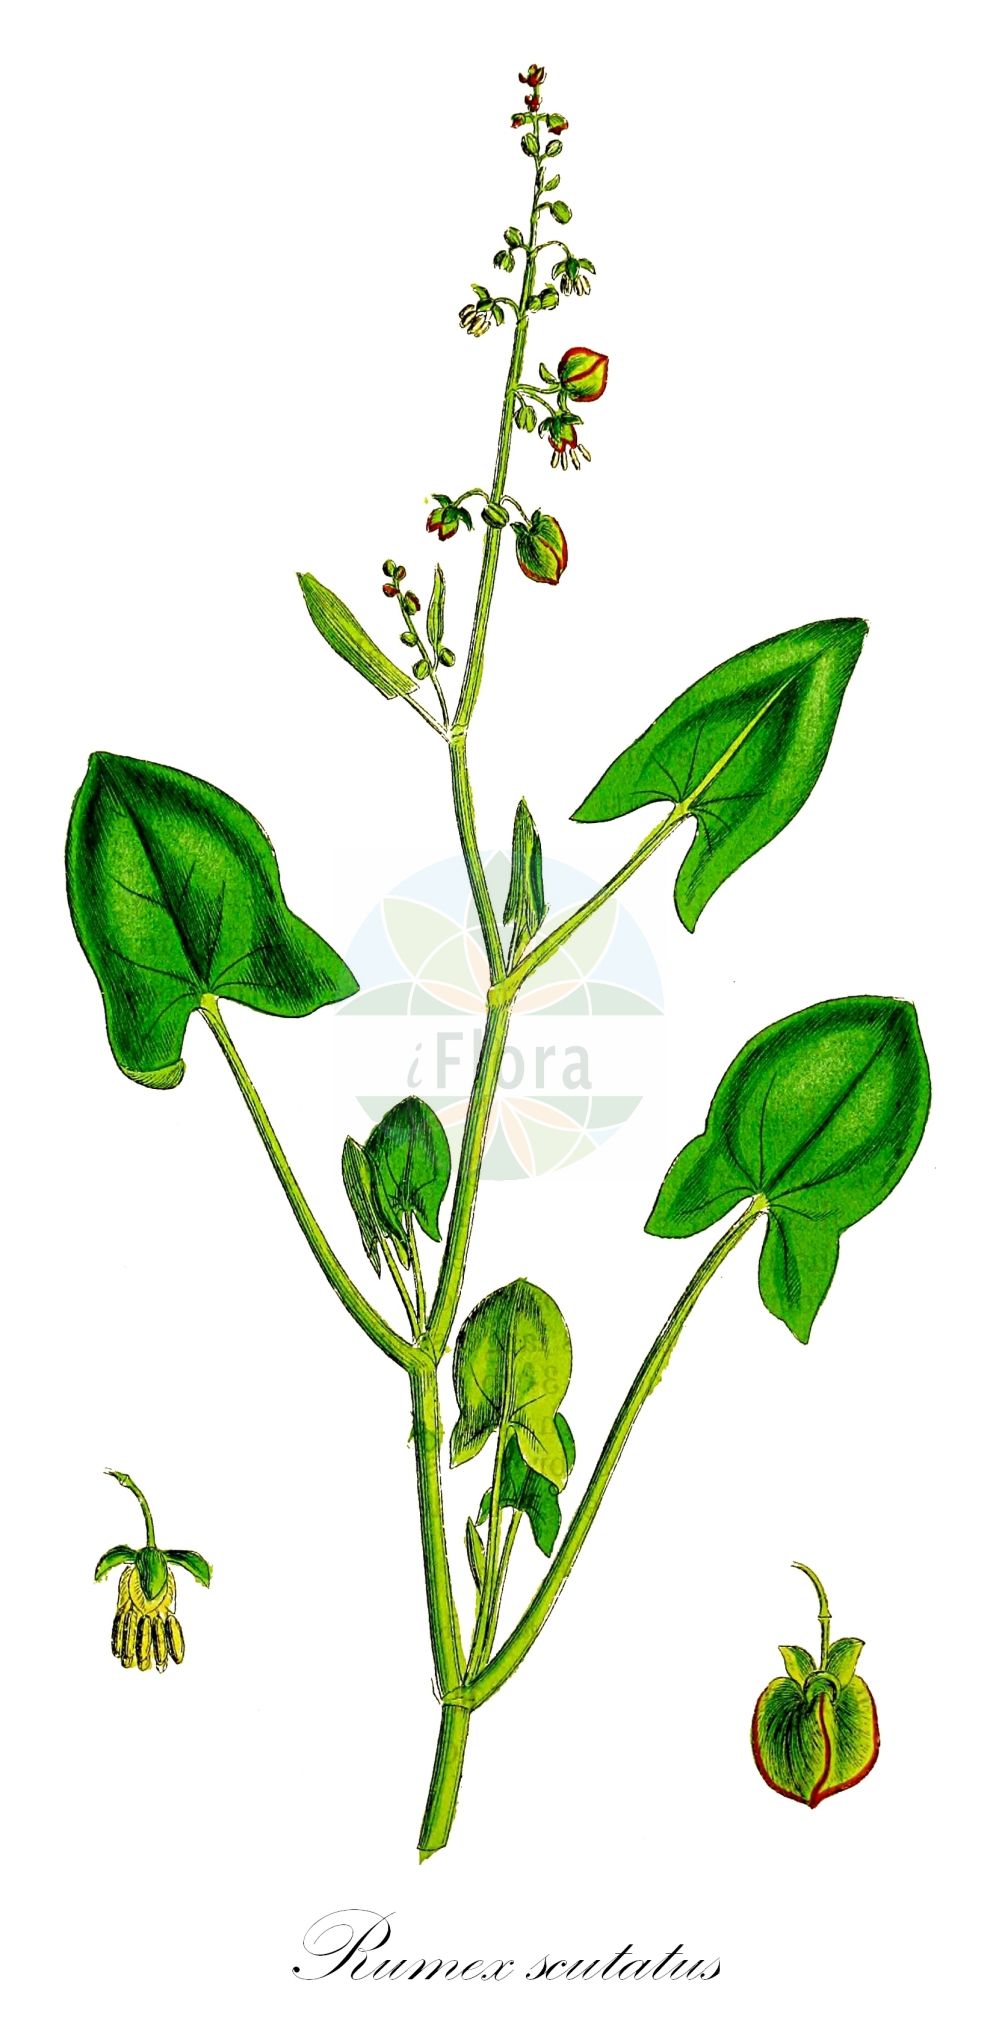 Historische Abbildung von Rumex scutatus (Schild-Ampfer - French Sorrel). Das Bild zeigt Blatt, Bluete, Frucht und Same. ---- Historical Drawing of Rumex scutatus (Schild-Ampfer - French Sorrel). The image is showing leaf, flower, fruit and seed.(Rumex scutatus,Schild-Ampfer,French Sorrel,Acetosa alpestris,Acetosa scutata,Rumex alpestris,Rumex glaucus,Rumex pubescens,Rumex scutatus,Rumex scutatus subsp. glaucus,Schild-Ampfer,French Sorrel,Shield Dock,Rumex,Ampfer,Sorrel,Polygonaceae,Knöterichgewächse,Knotgrass family,Blatt,Bluete,Frucht,Same,leaf,flower,fruit,seed,Sowerby (1790-1813))